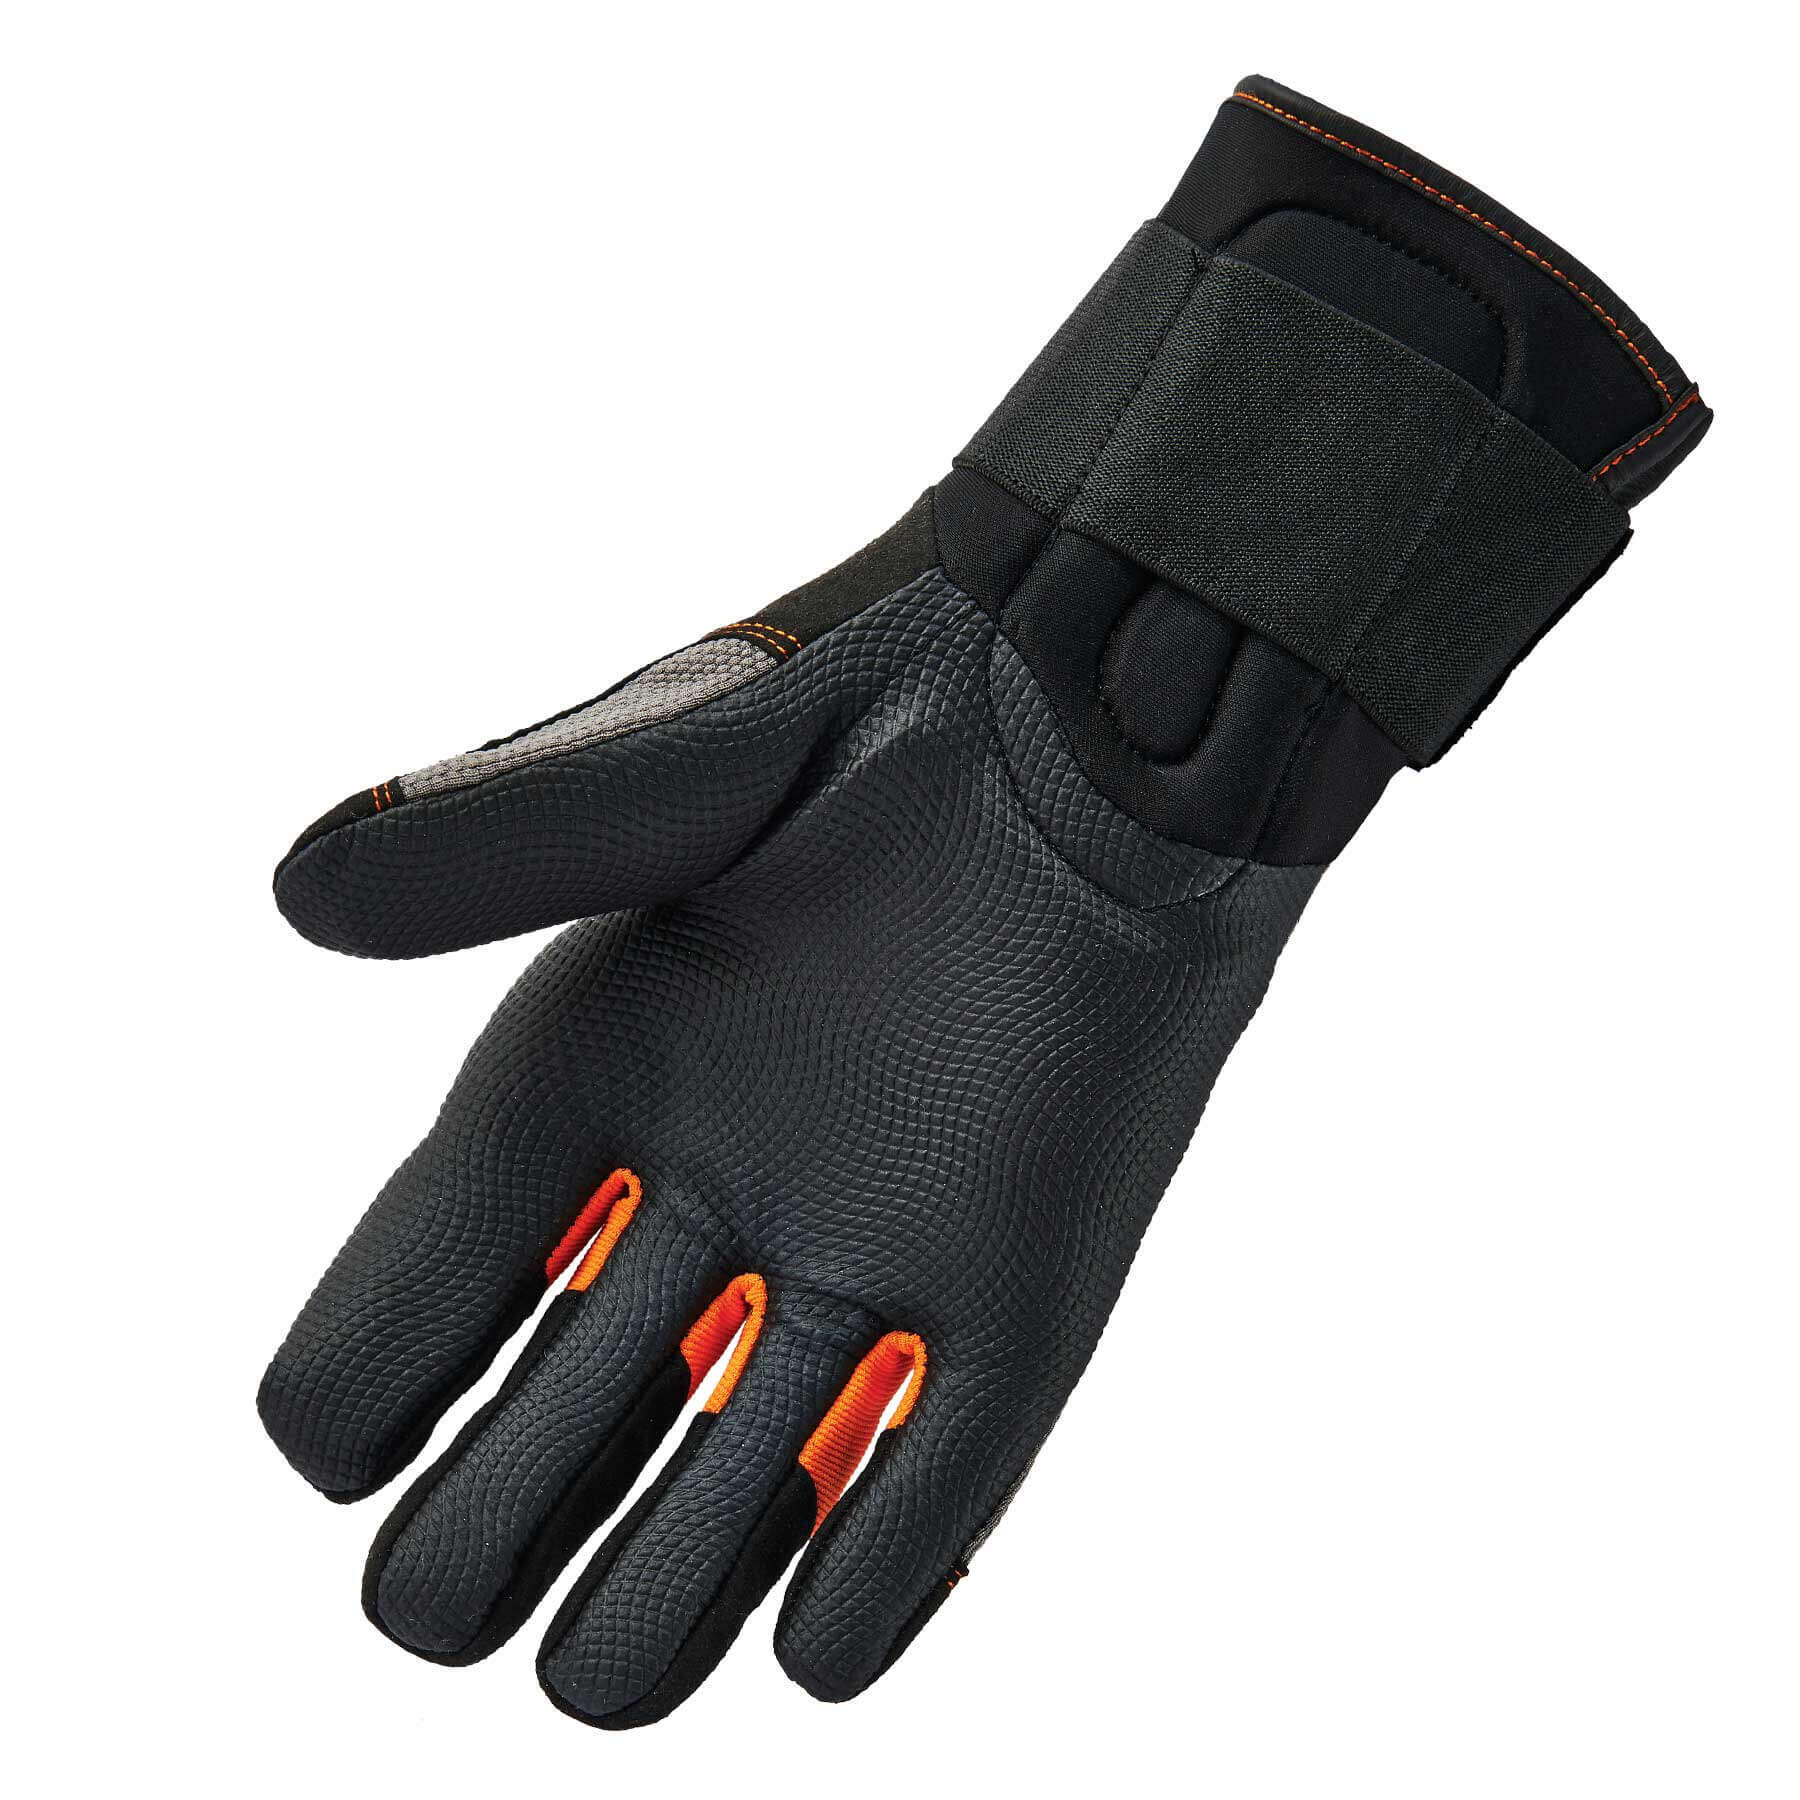 https://www.ergodyne.com/sites/default/files/product-images/17732-9012-certified-av-gloves-palm.jpg